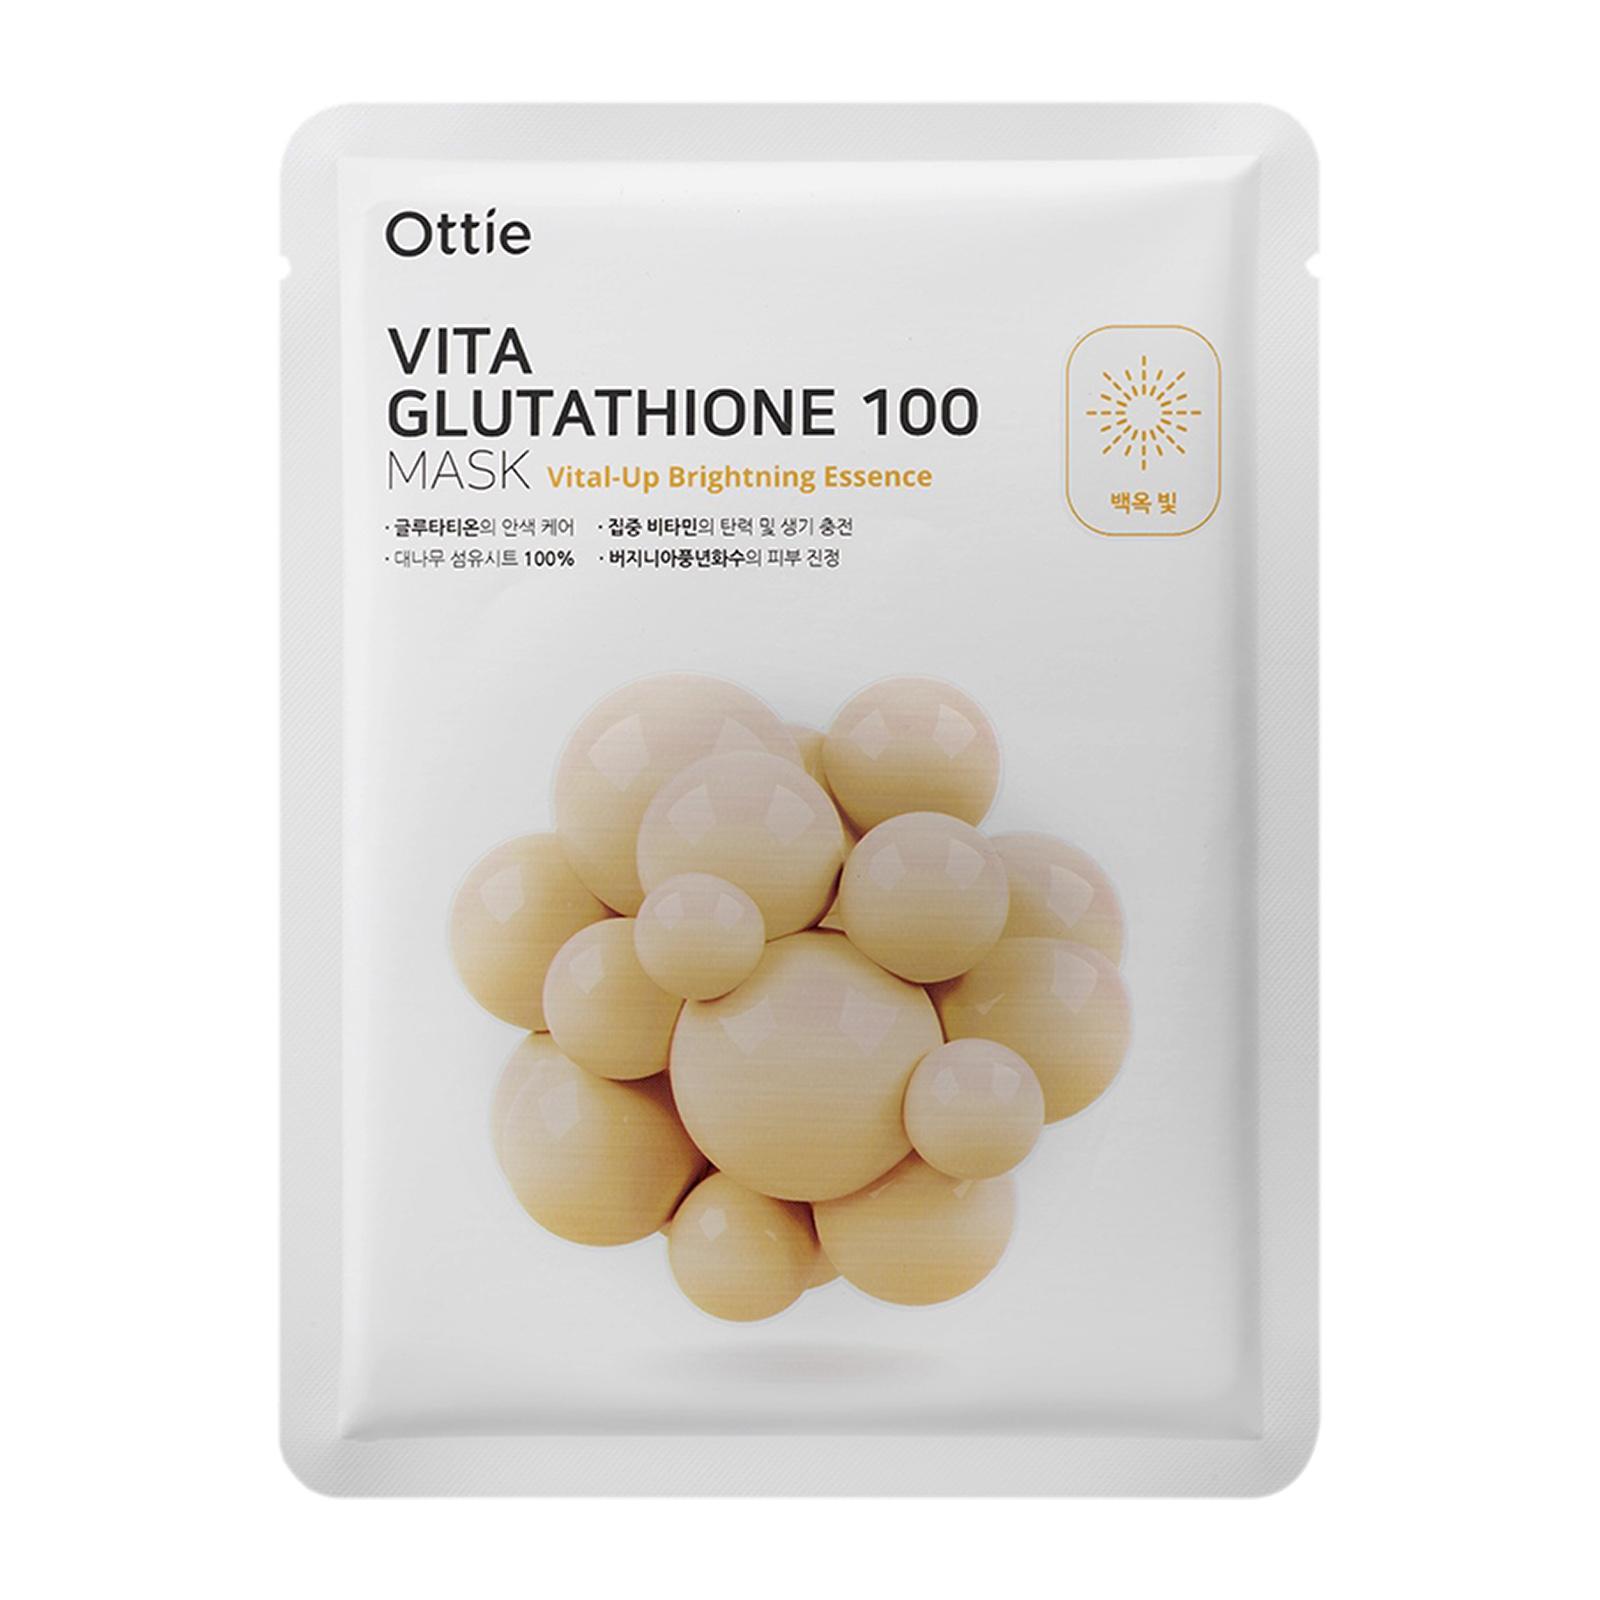 Masca pentru fata Ottie, Vita Glutathione 100 Mask, 23ml